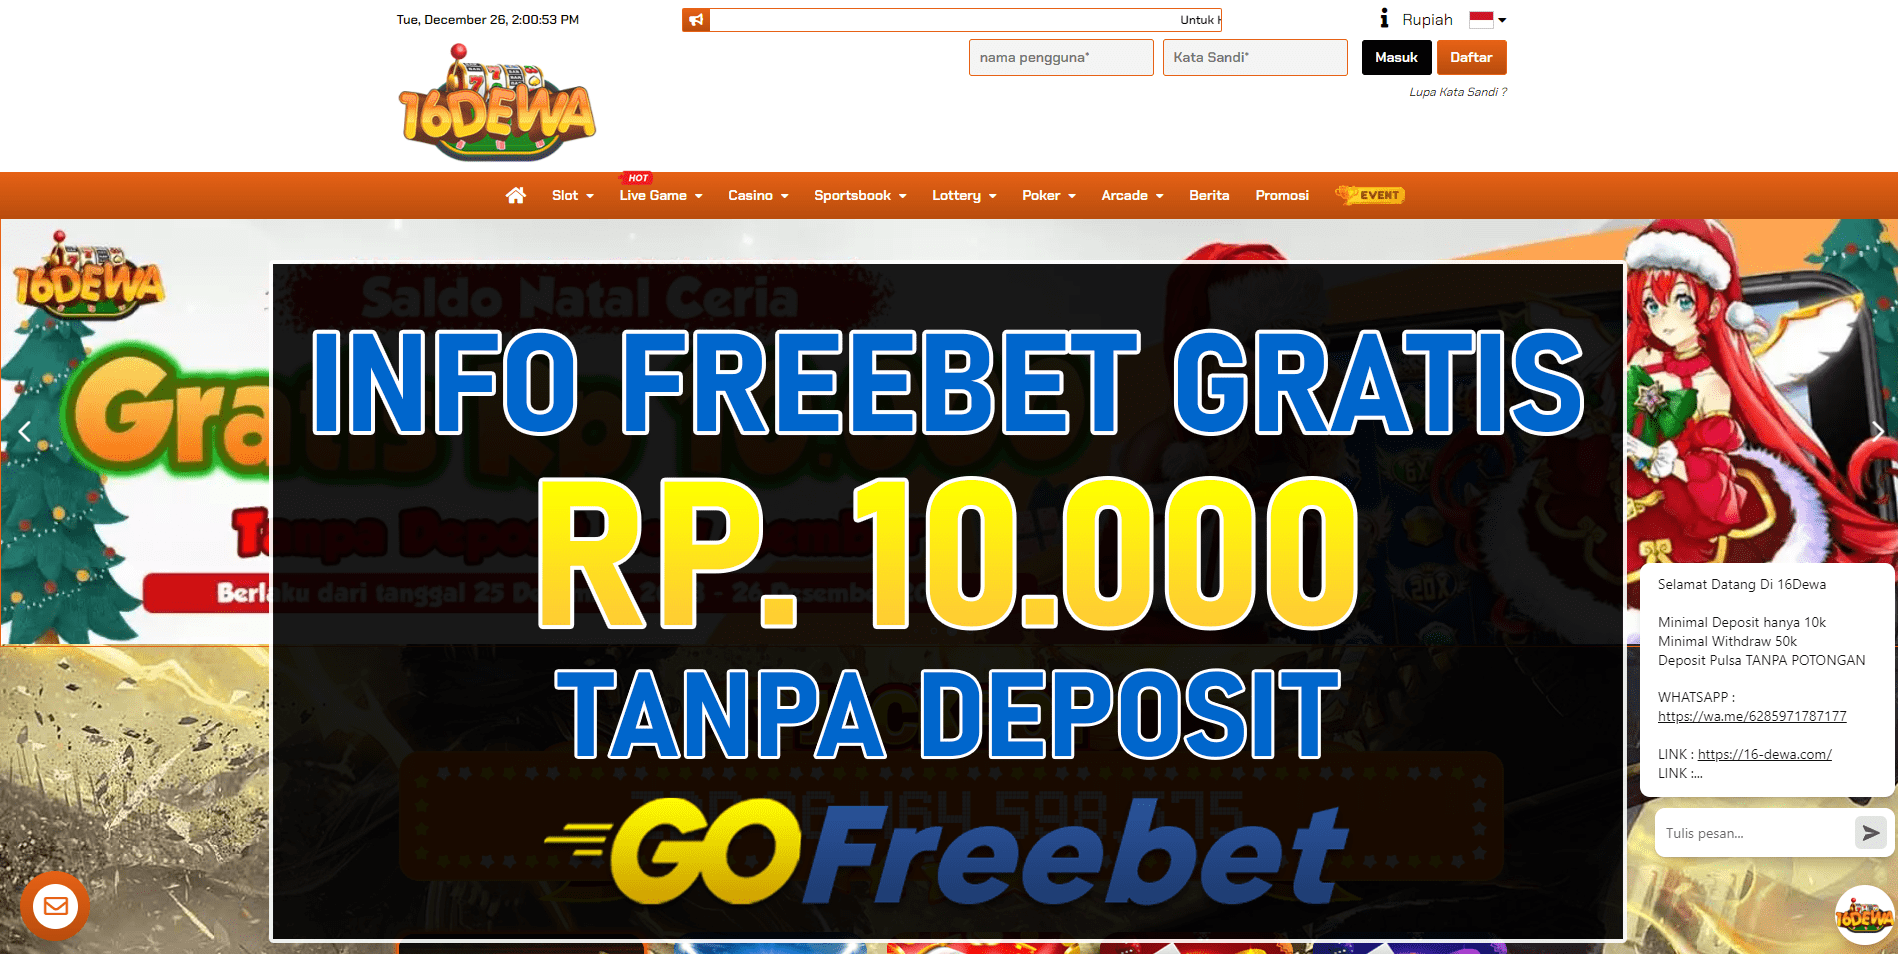 16Dewa Freebet Gratis Rp 10.000 Tanpa Deposit